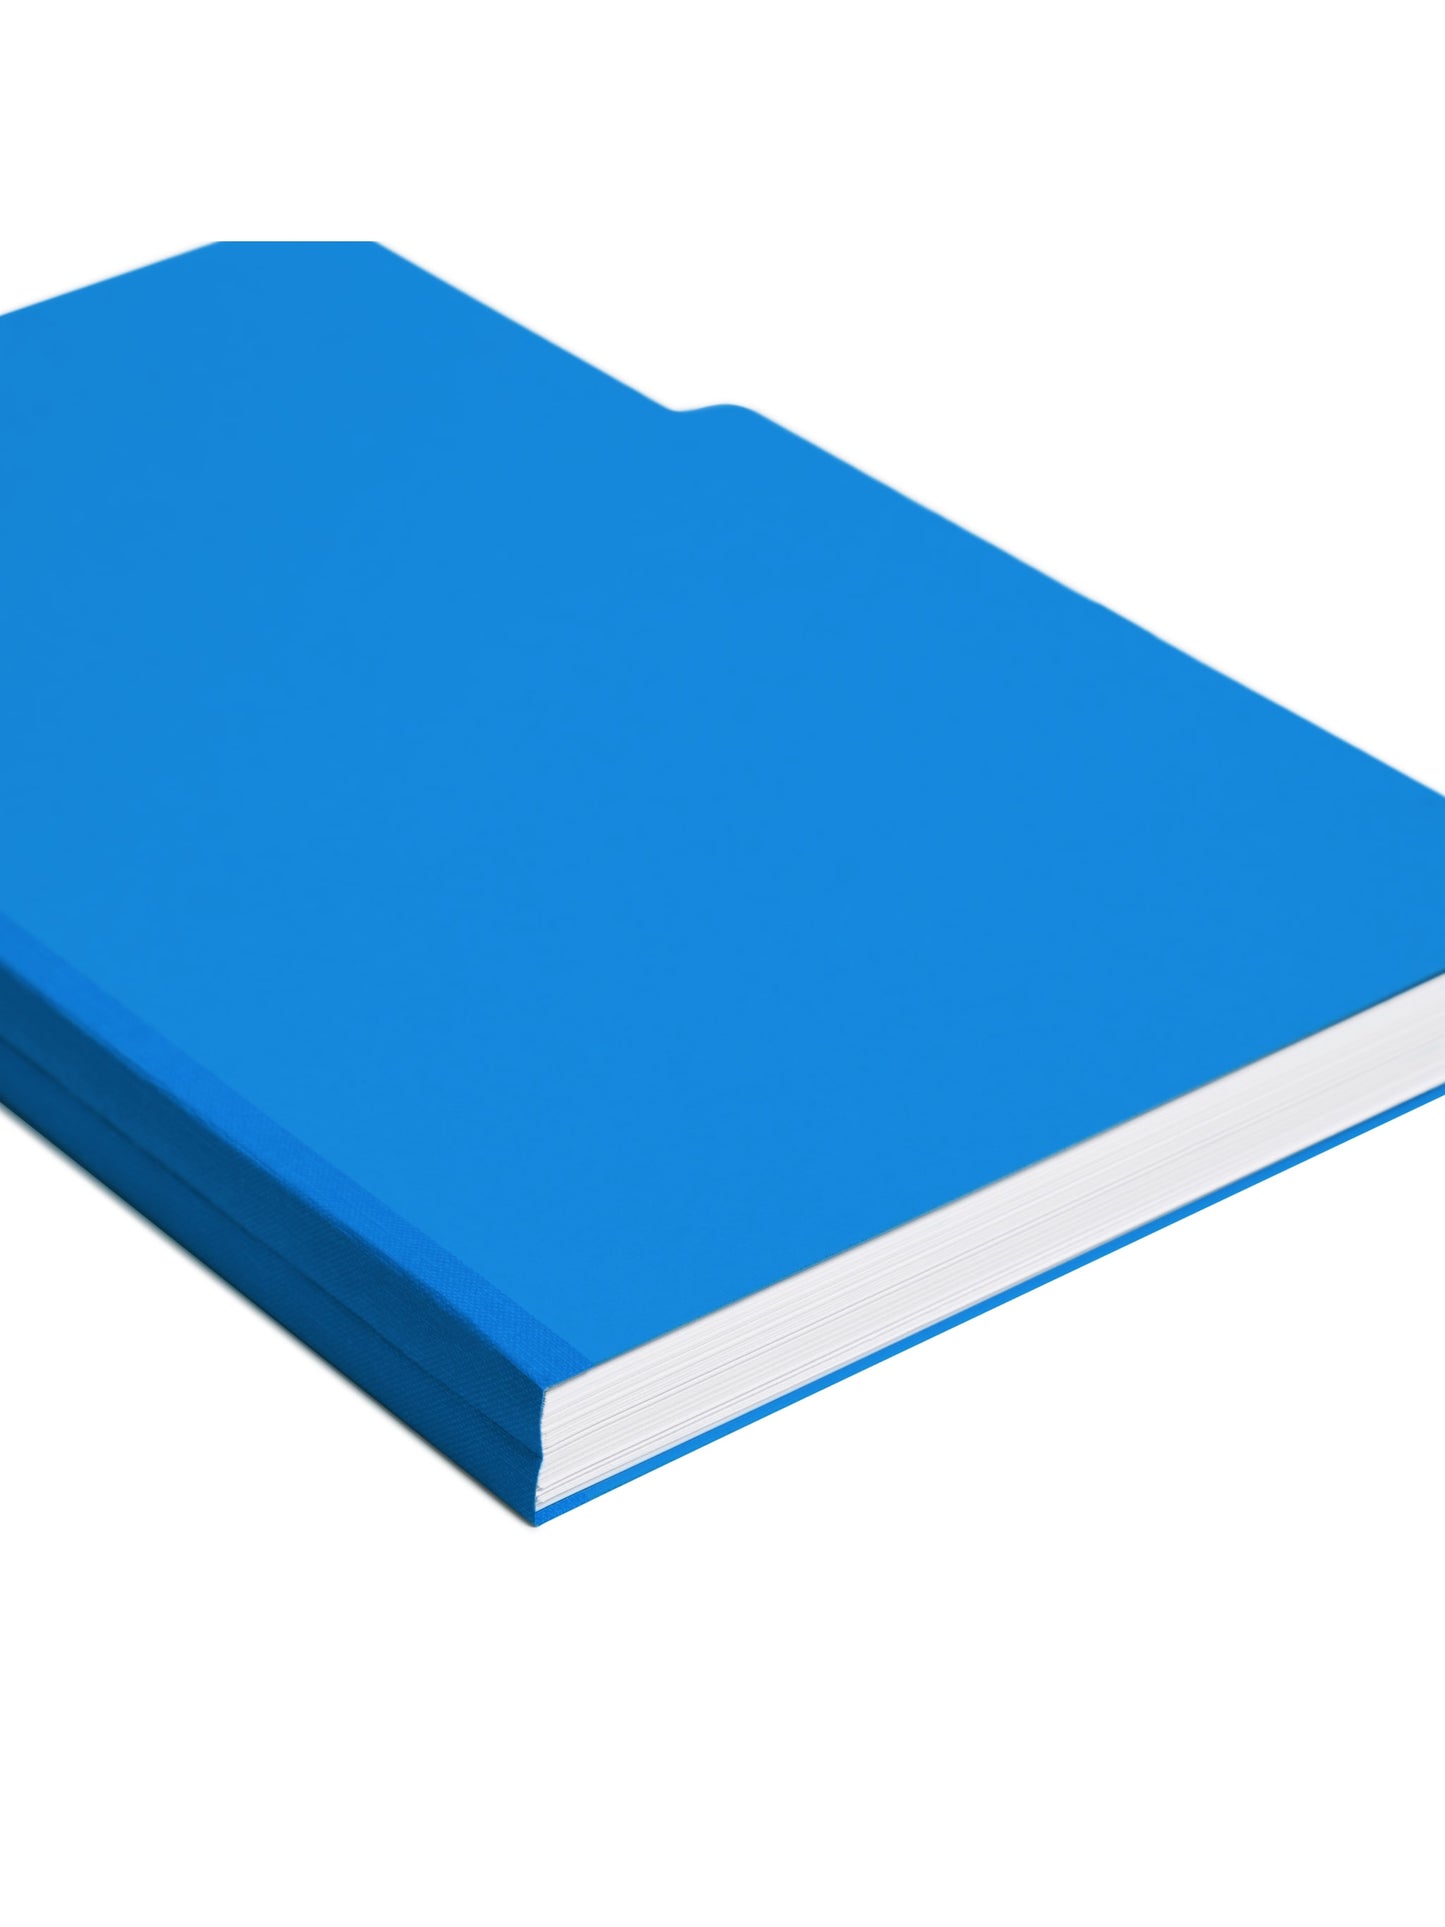 Pressboard File Folder, 1 inch Expansion, 1/3-Cut Tab, Dark Blue Color, Legal Size, Set of 25, 086486225410